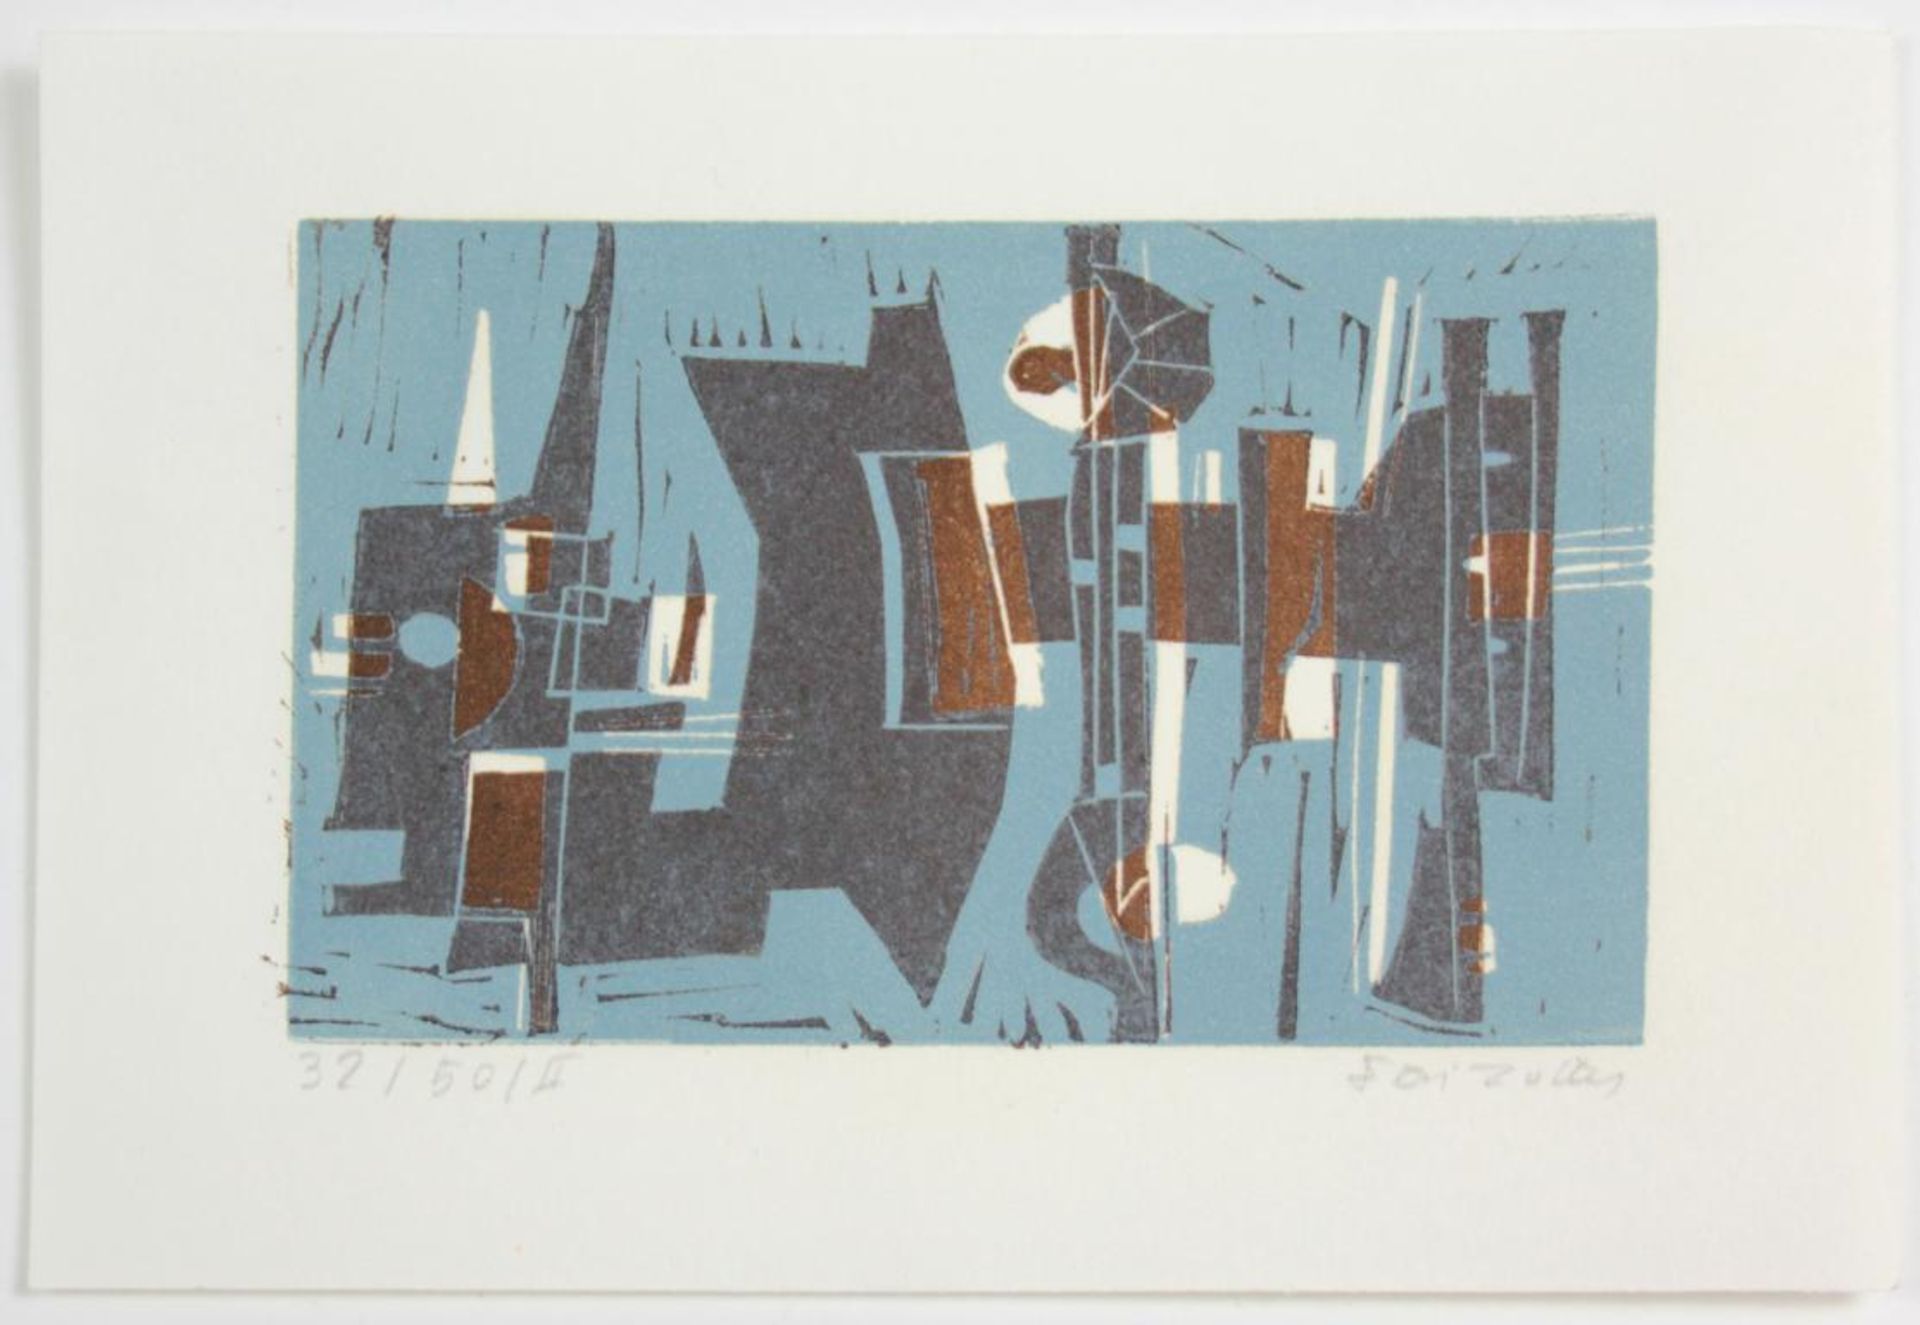  Feri Zotter(1923 - 1987)"Fuge"1966Linolschnitt auf Papier; Ed. 32/50/II; signiert, datiert, nummeri - Bild 2 aus 2